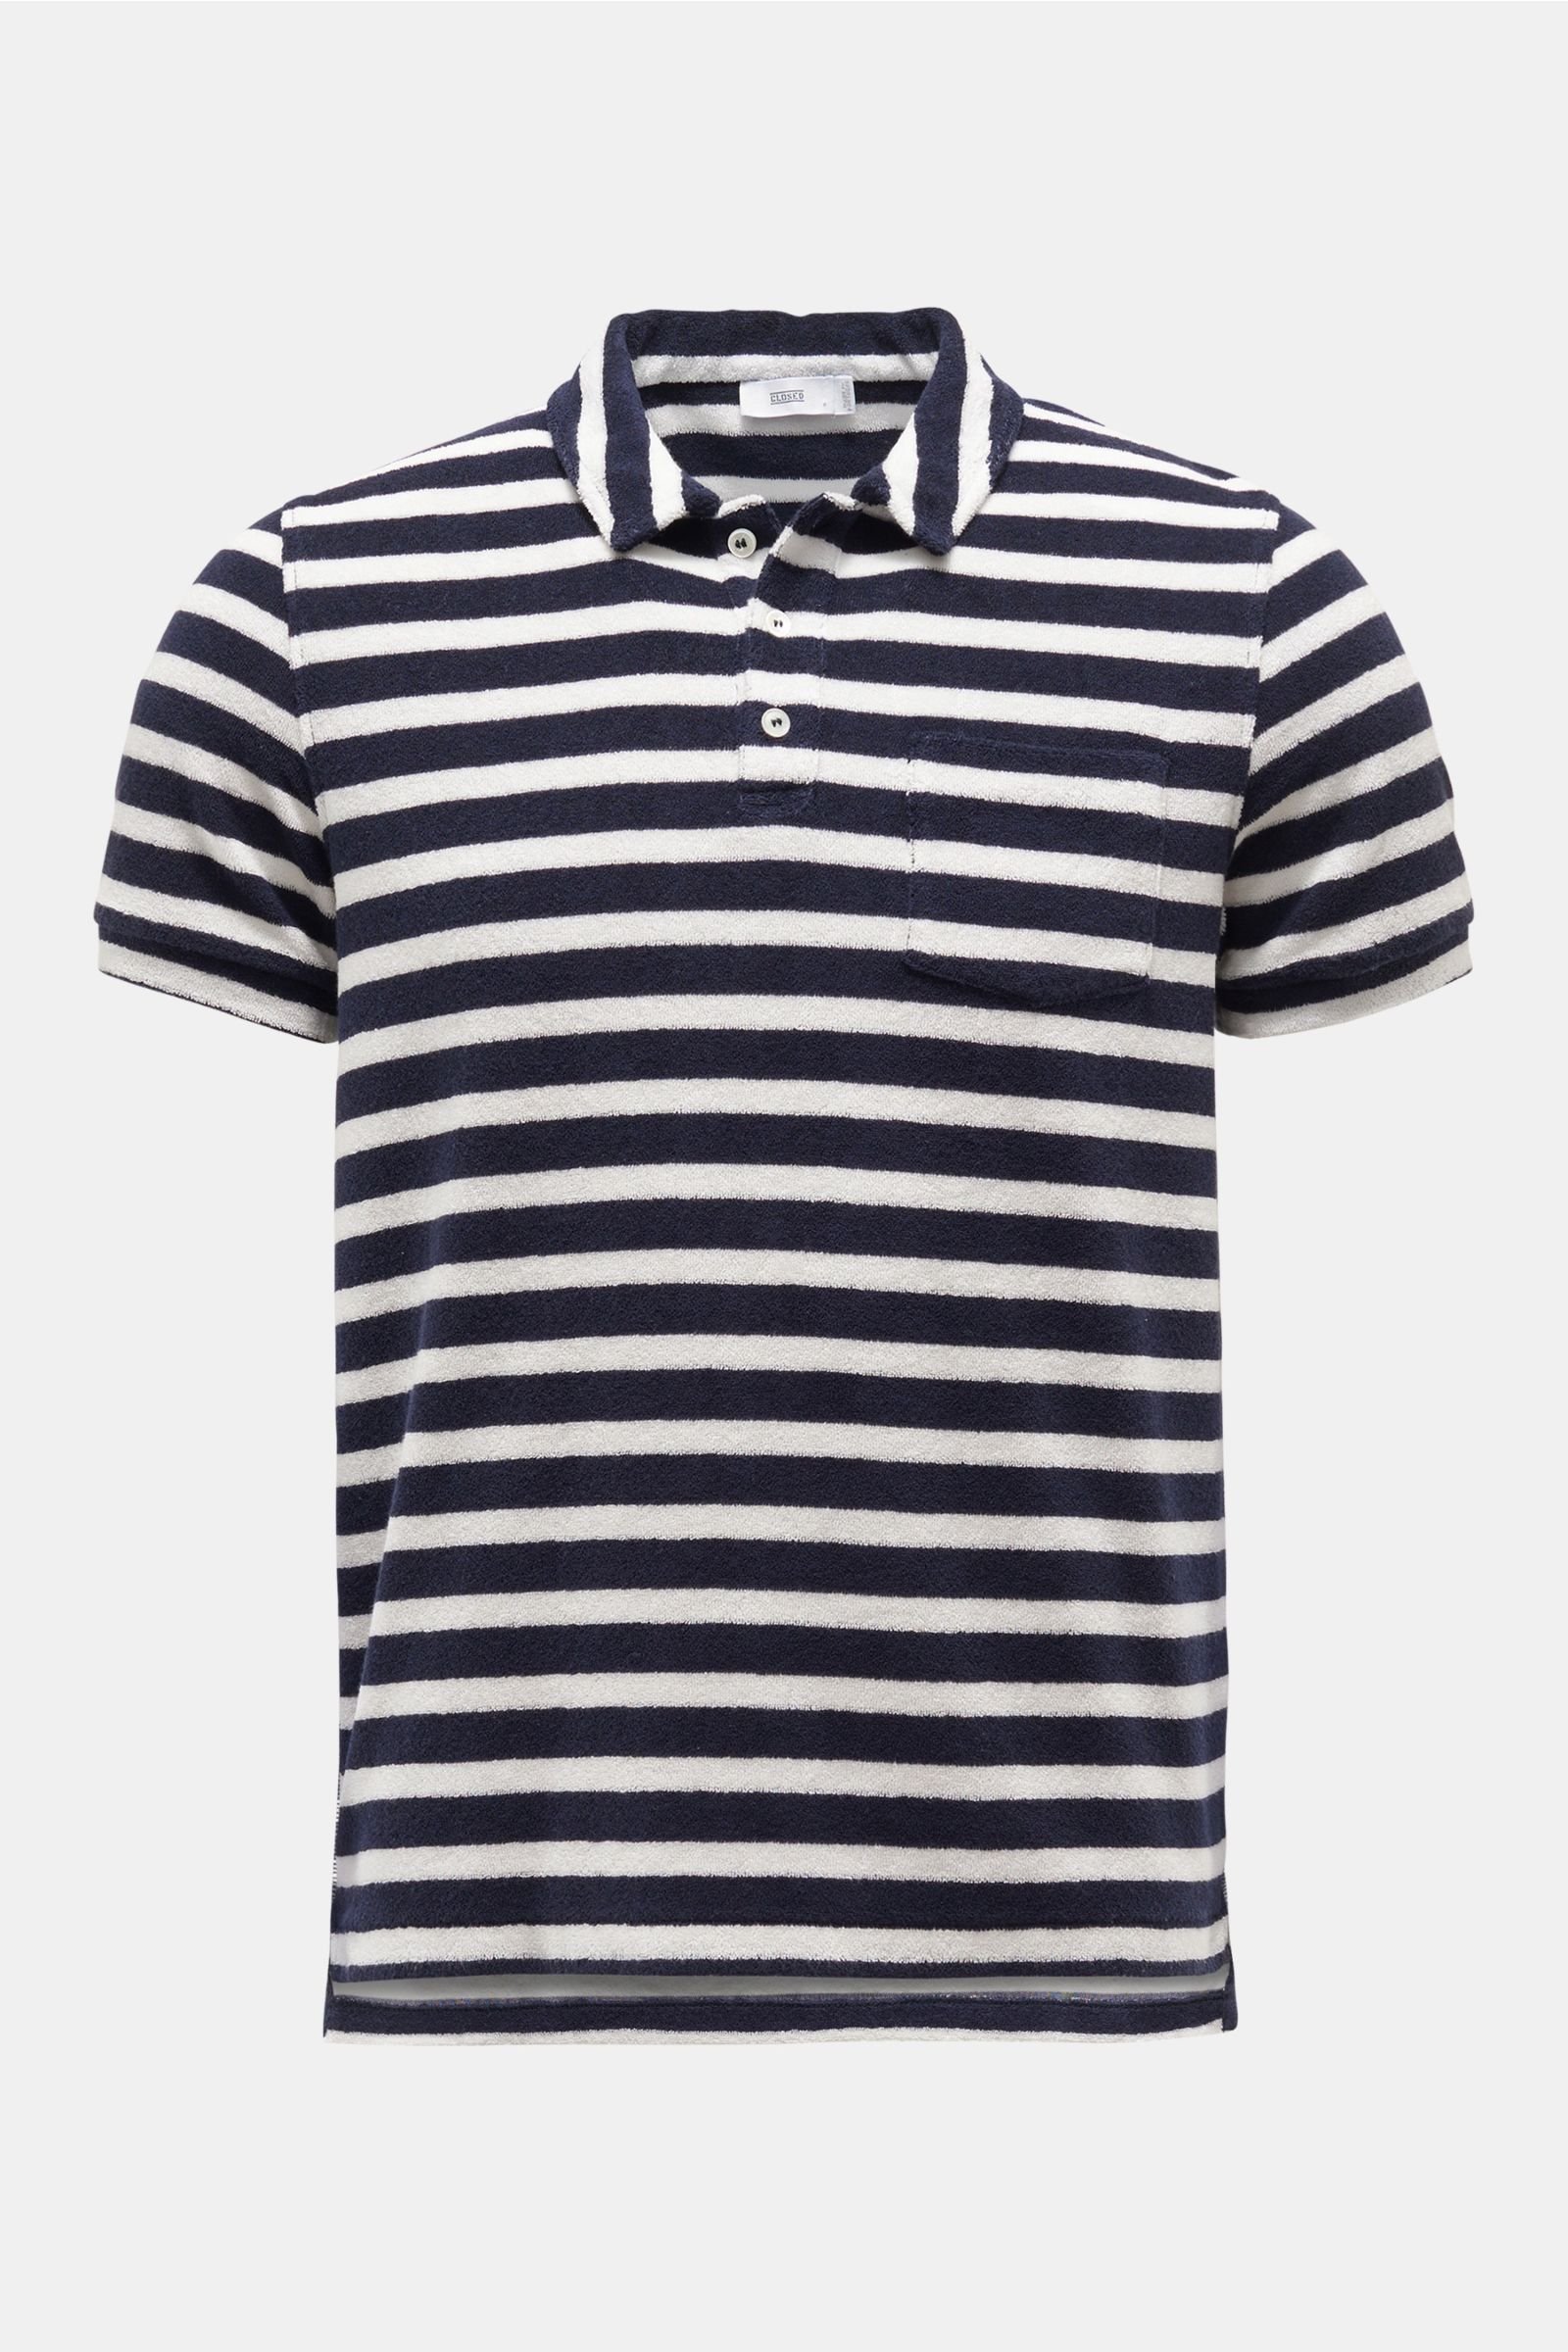 Terry polo shirt navy/white striped